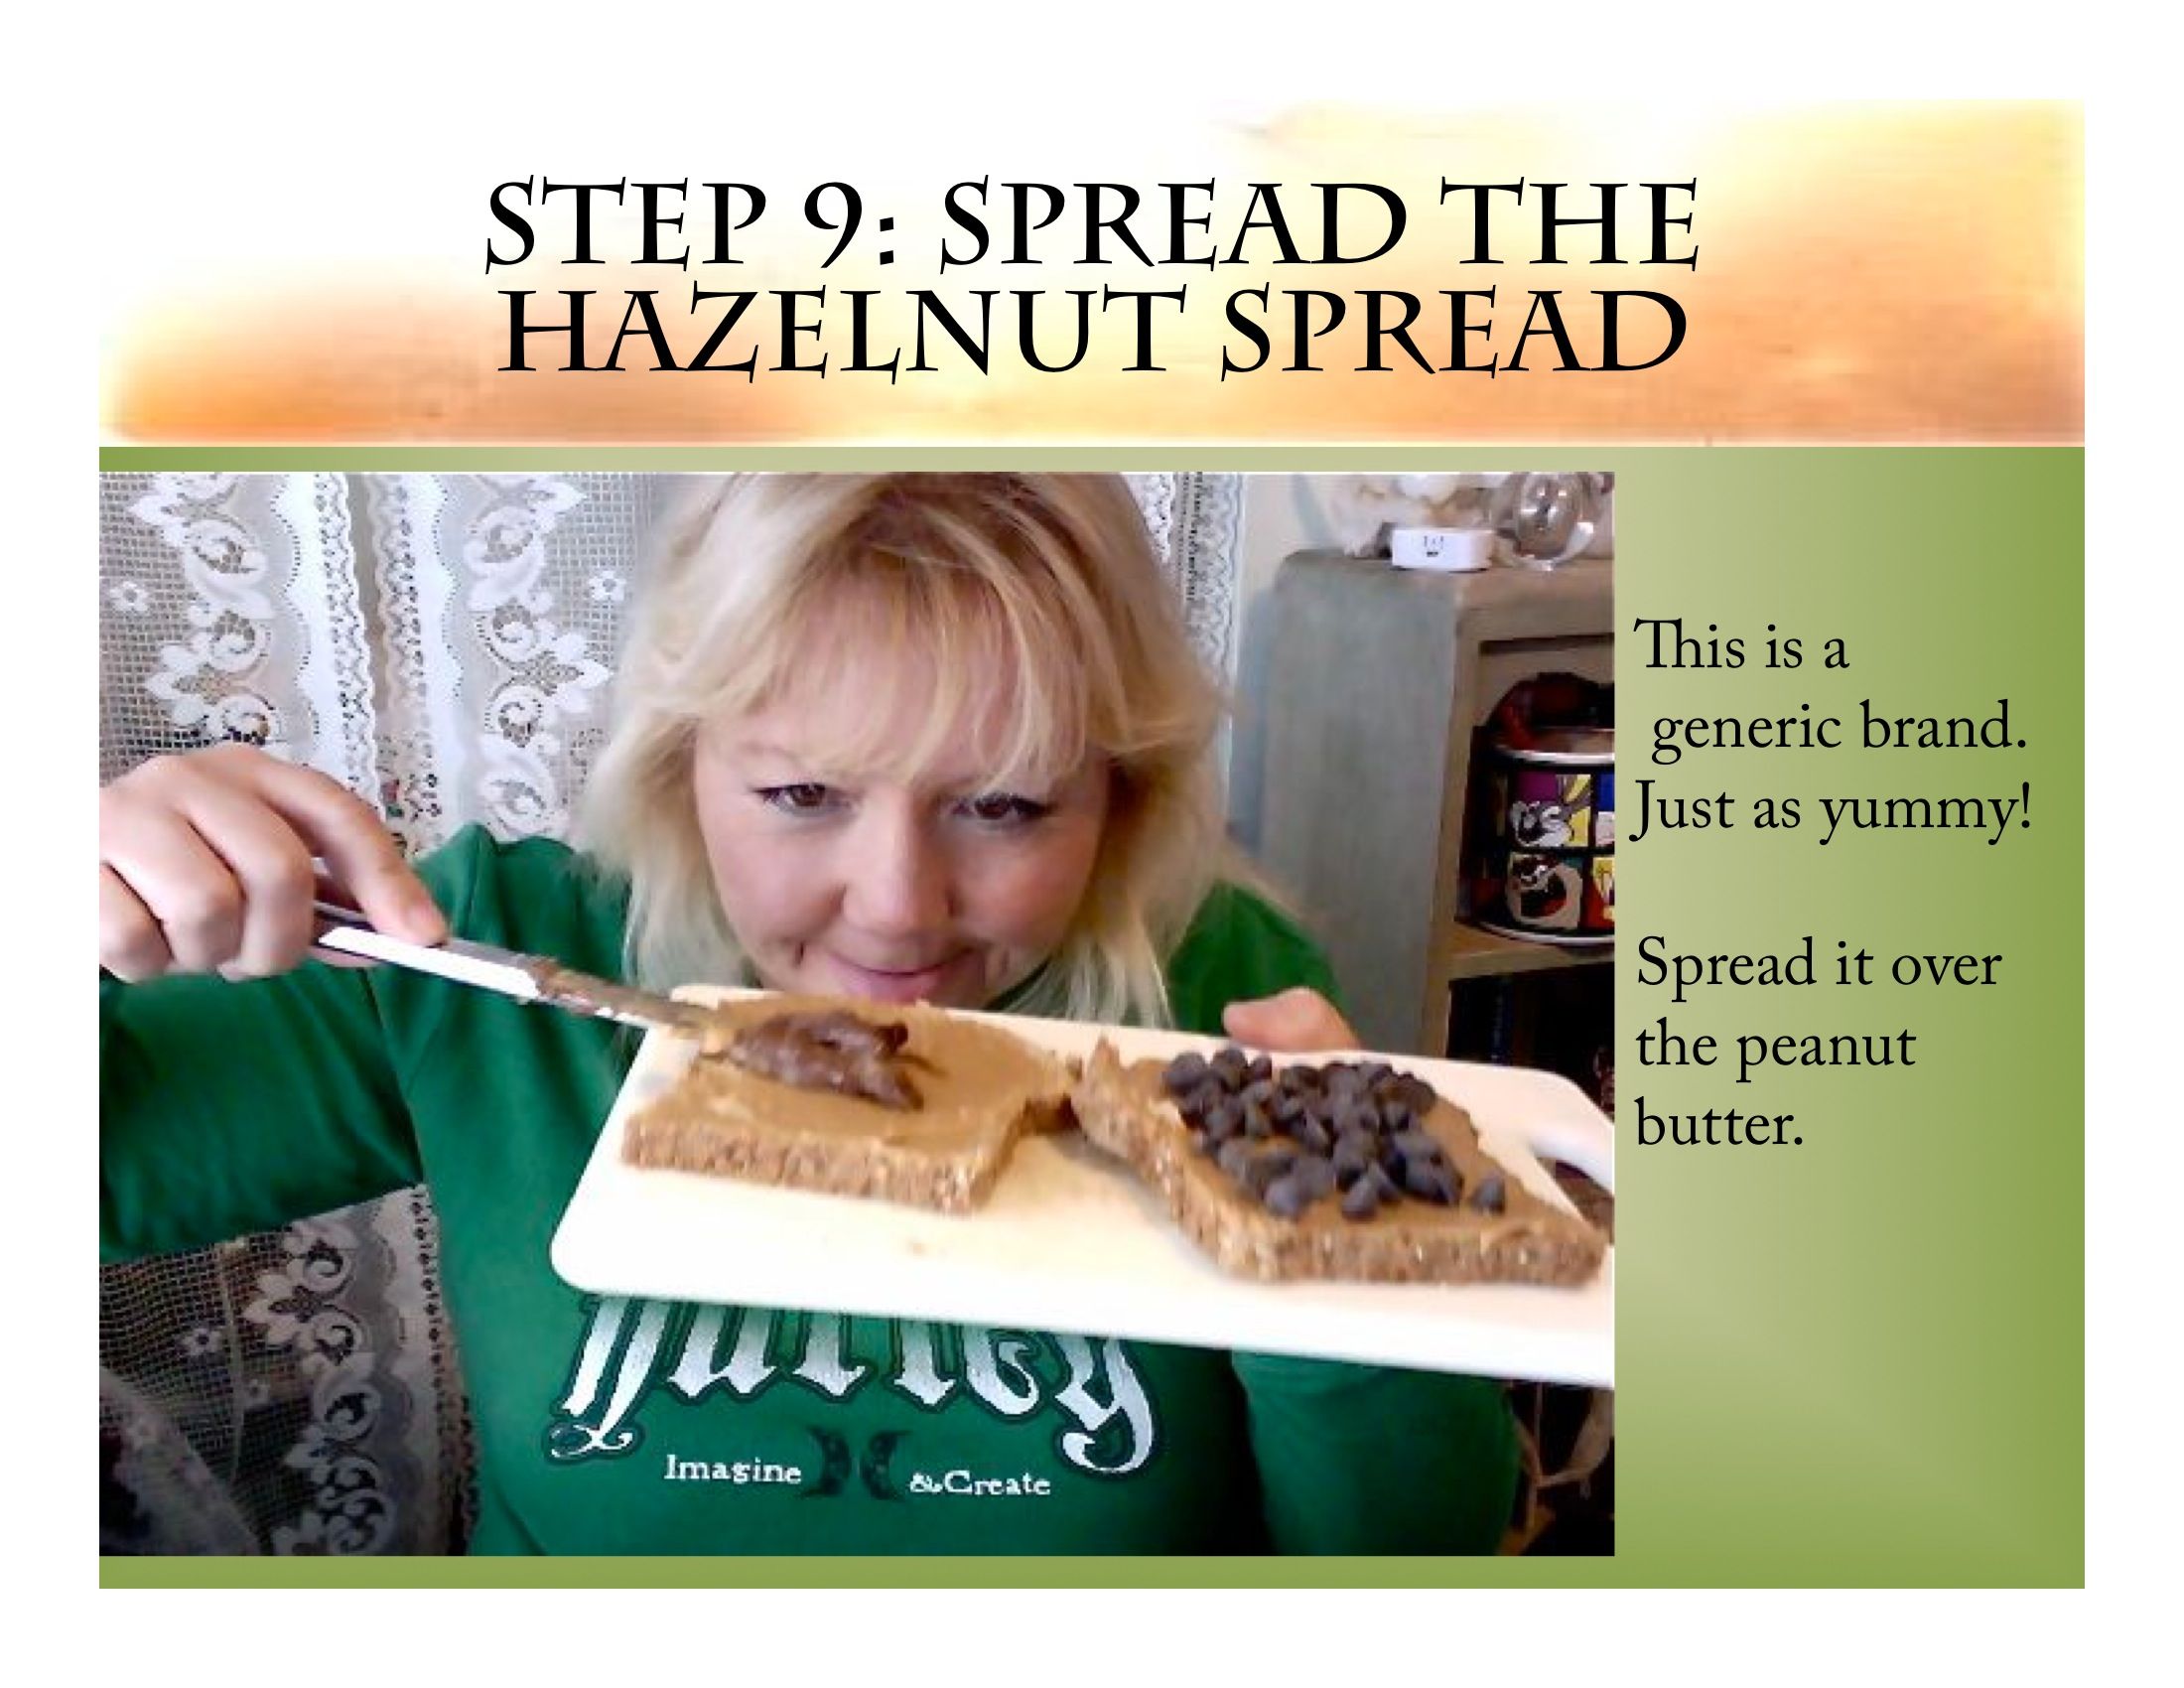 Step 9: Still Spreading the Hazelnut Spread